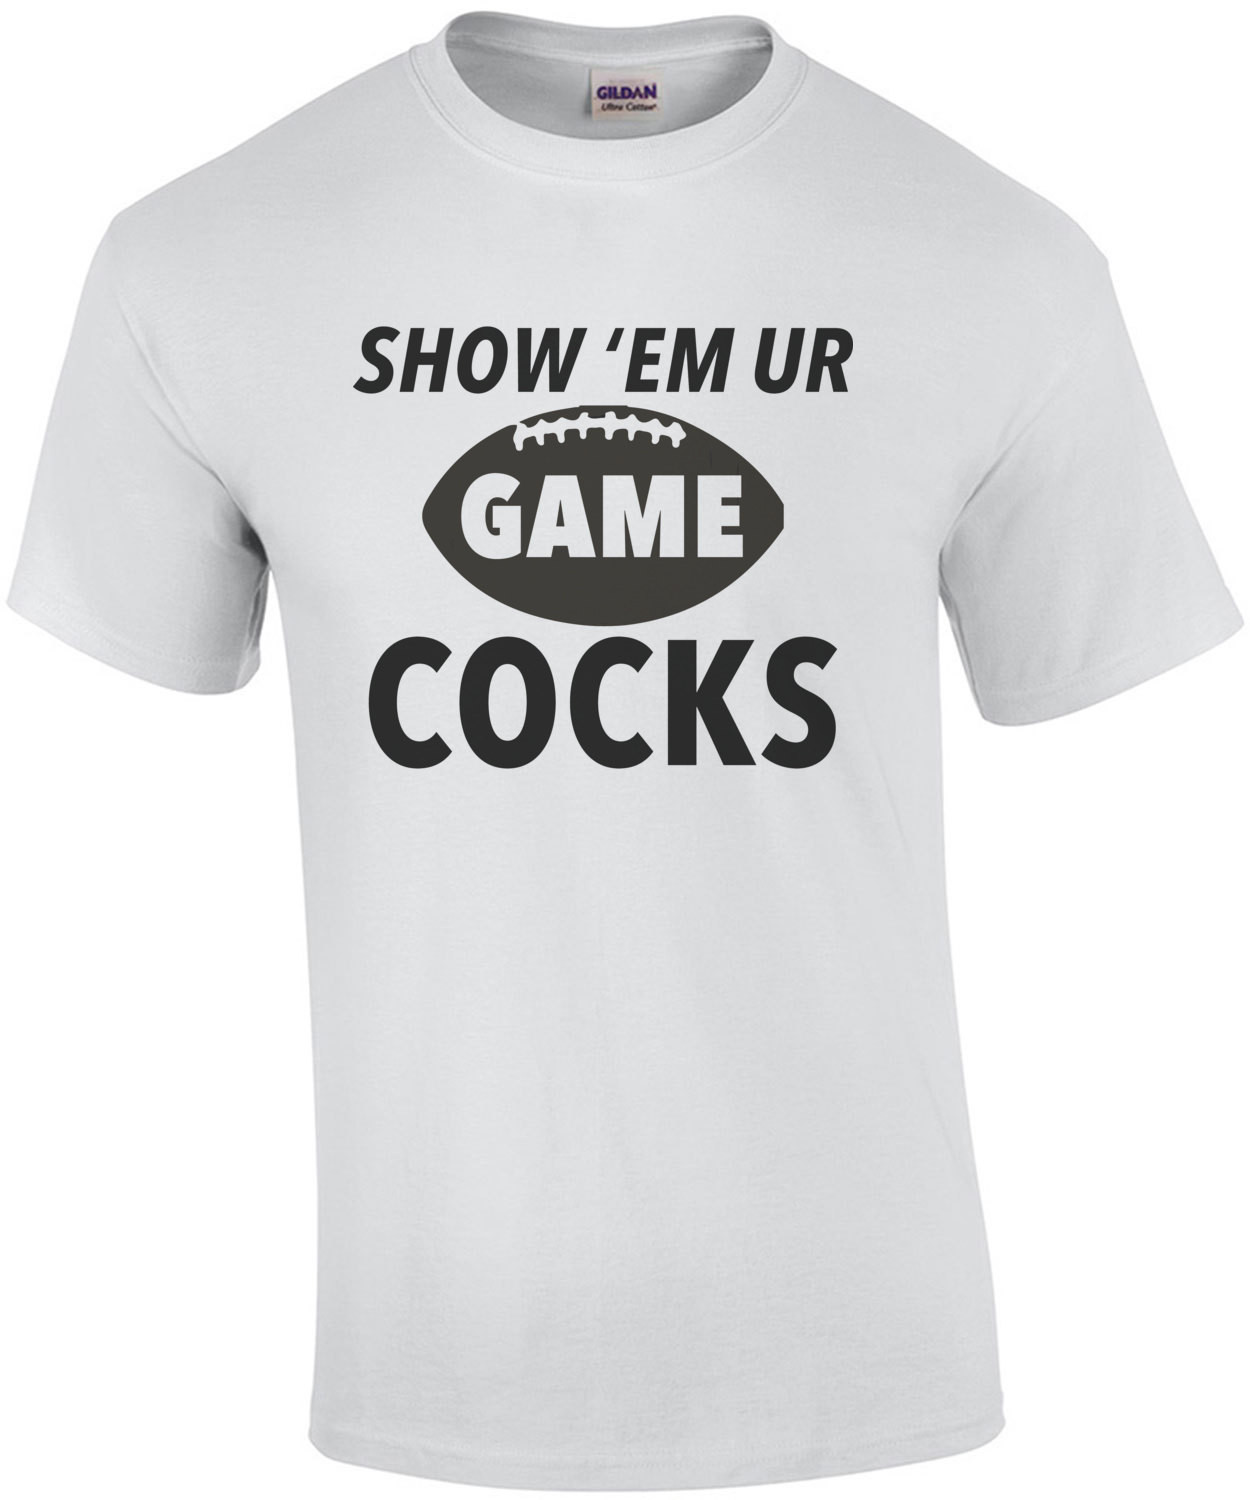 Show 'em your game cocks - South Carolina T-Shirt